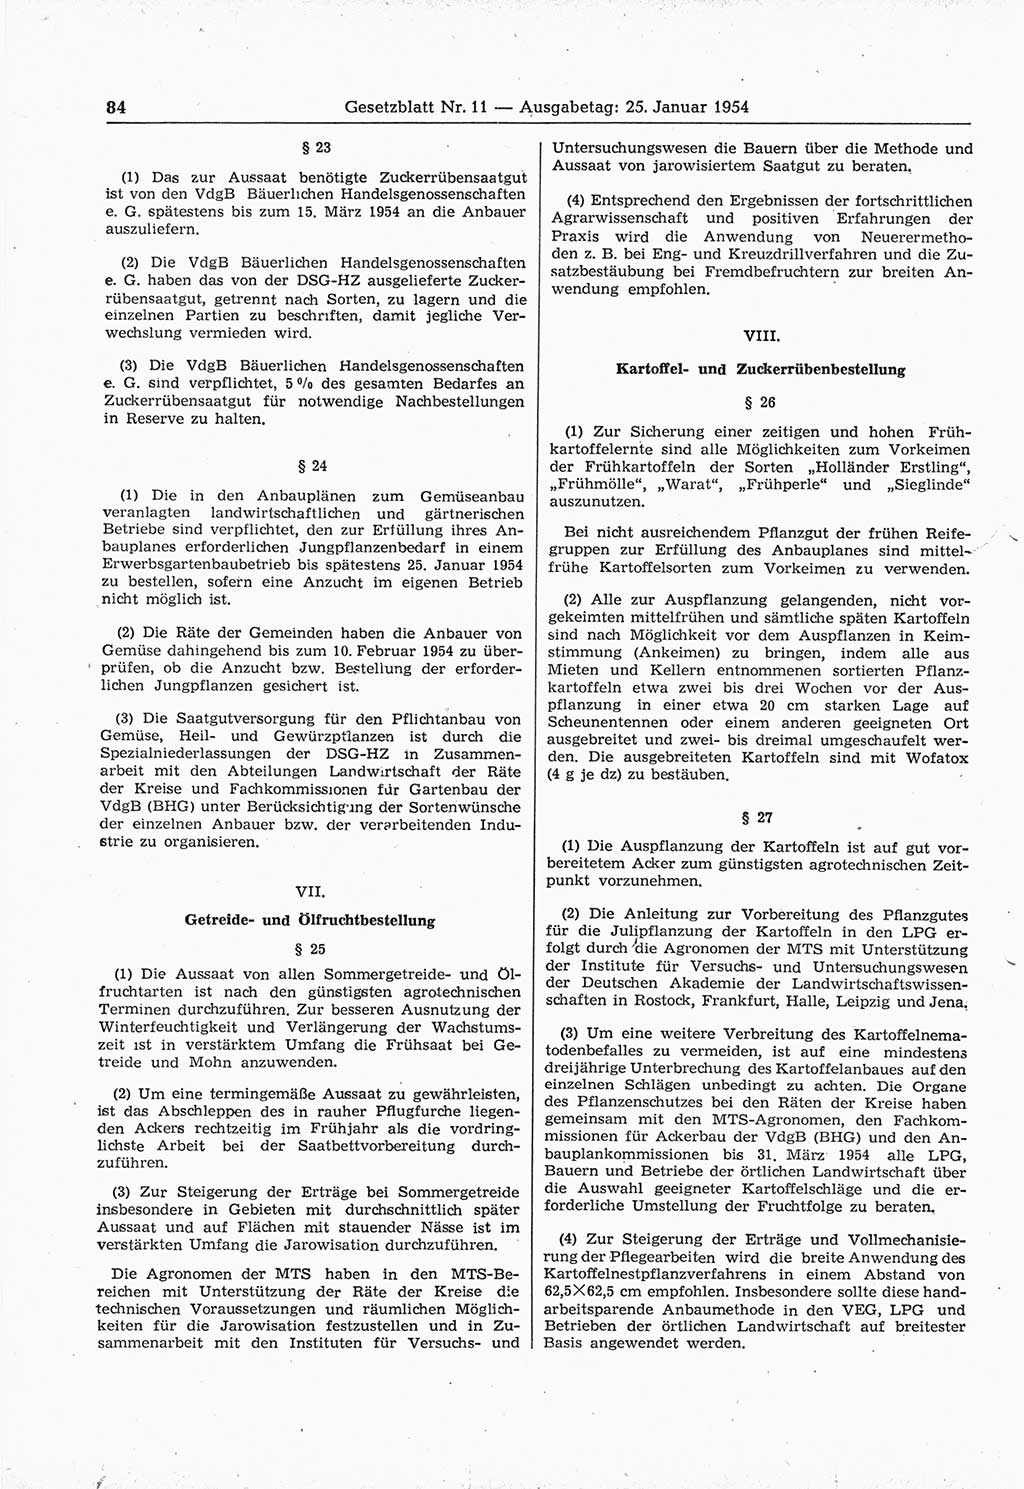 Gesetzblatt (GBl.) der Deutschen Demokratischen Republik (DDR) 1954, Seite 84 (GBl. DDR 1954, S. 84)